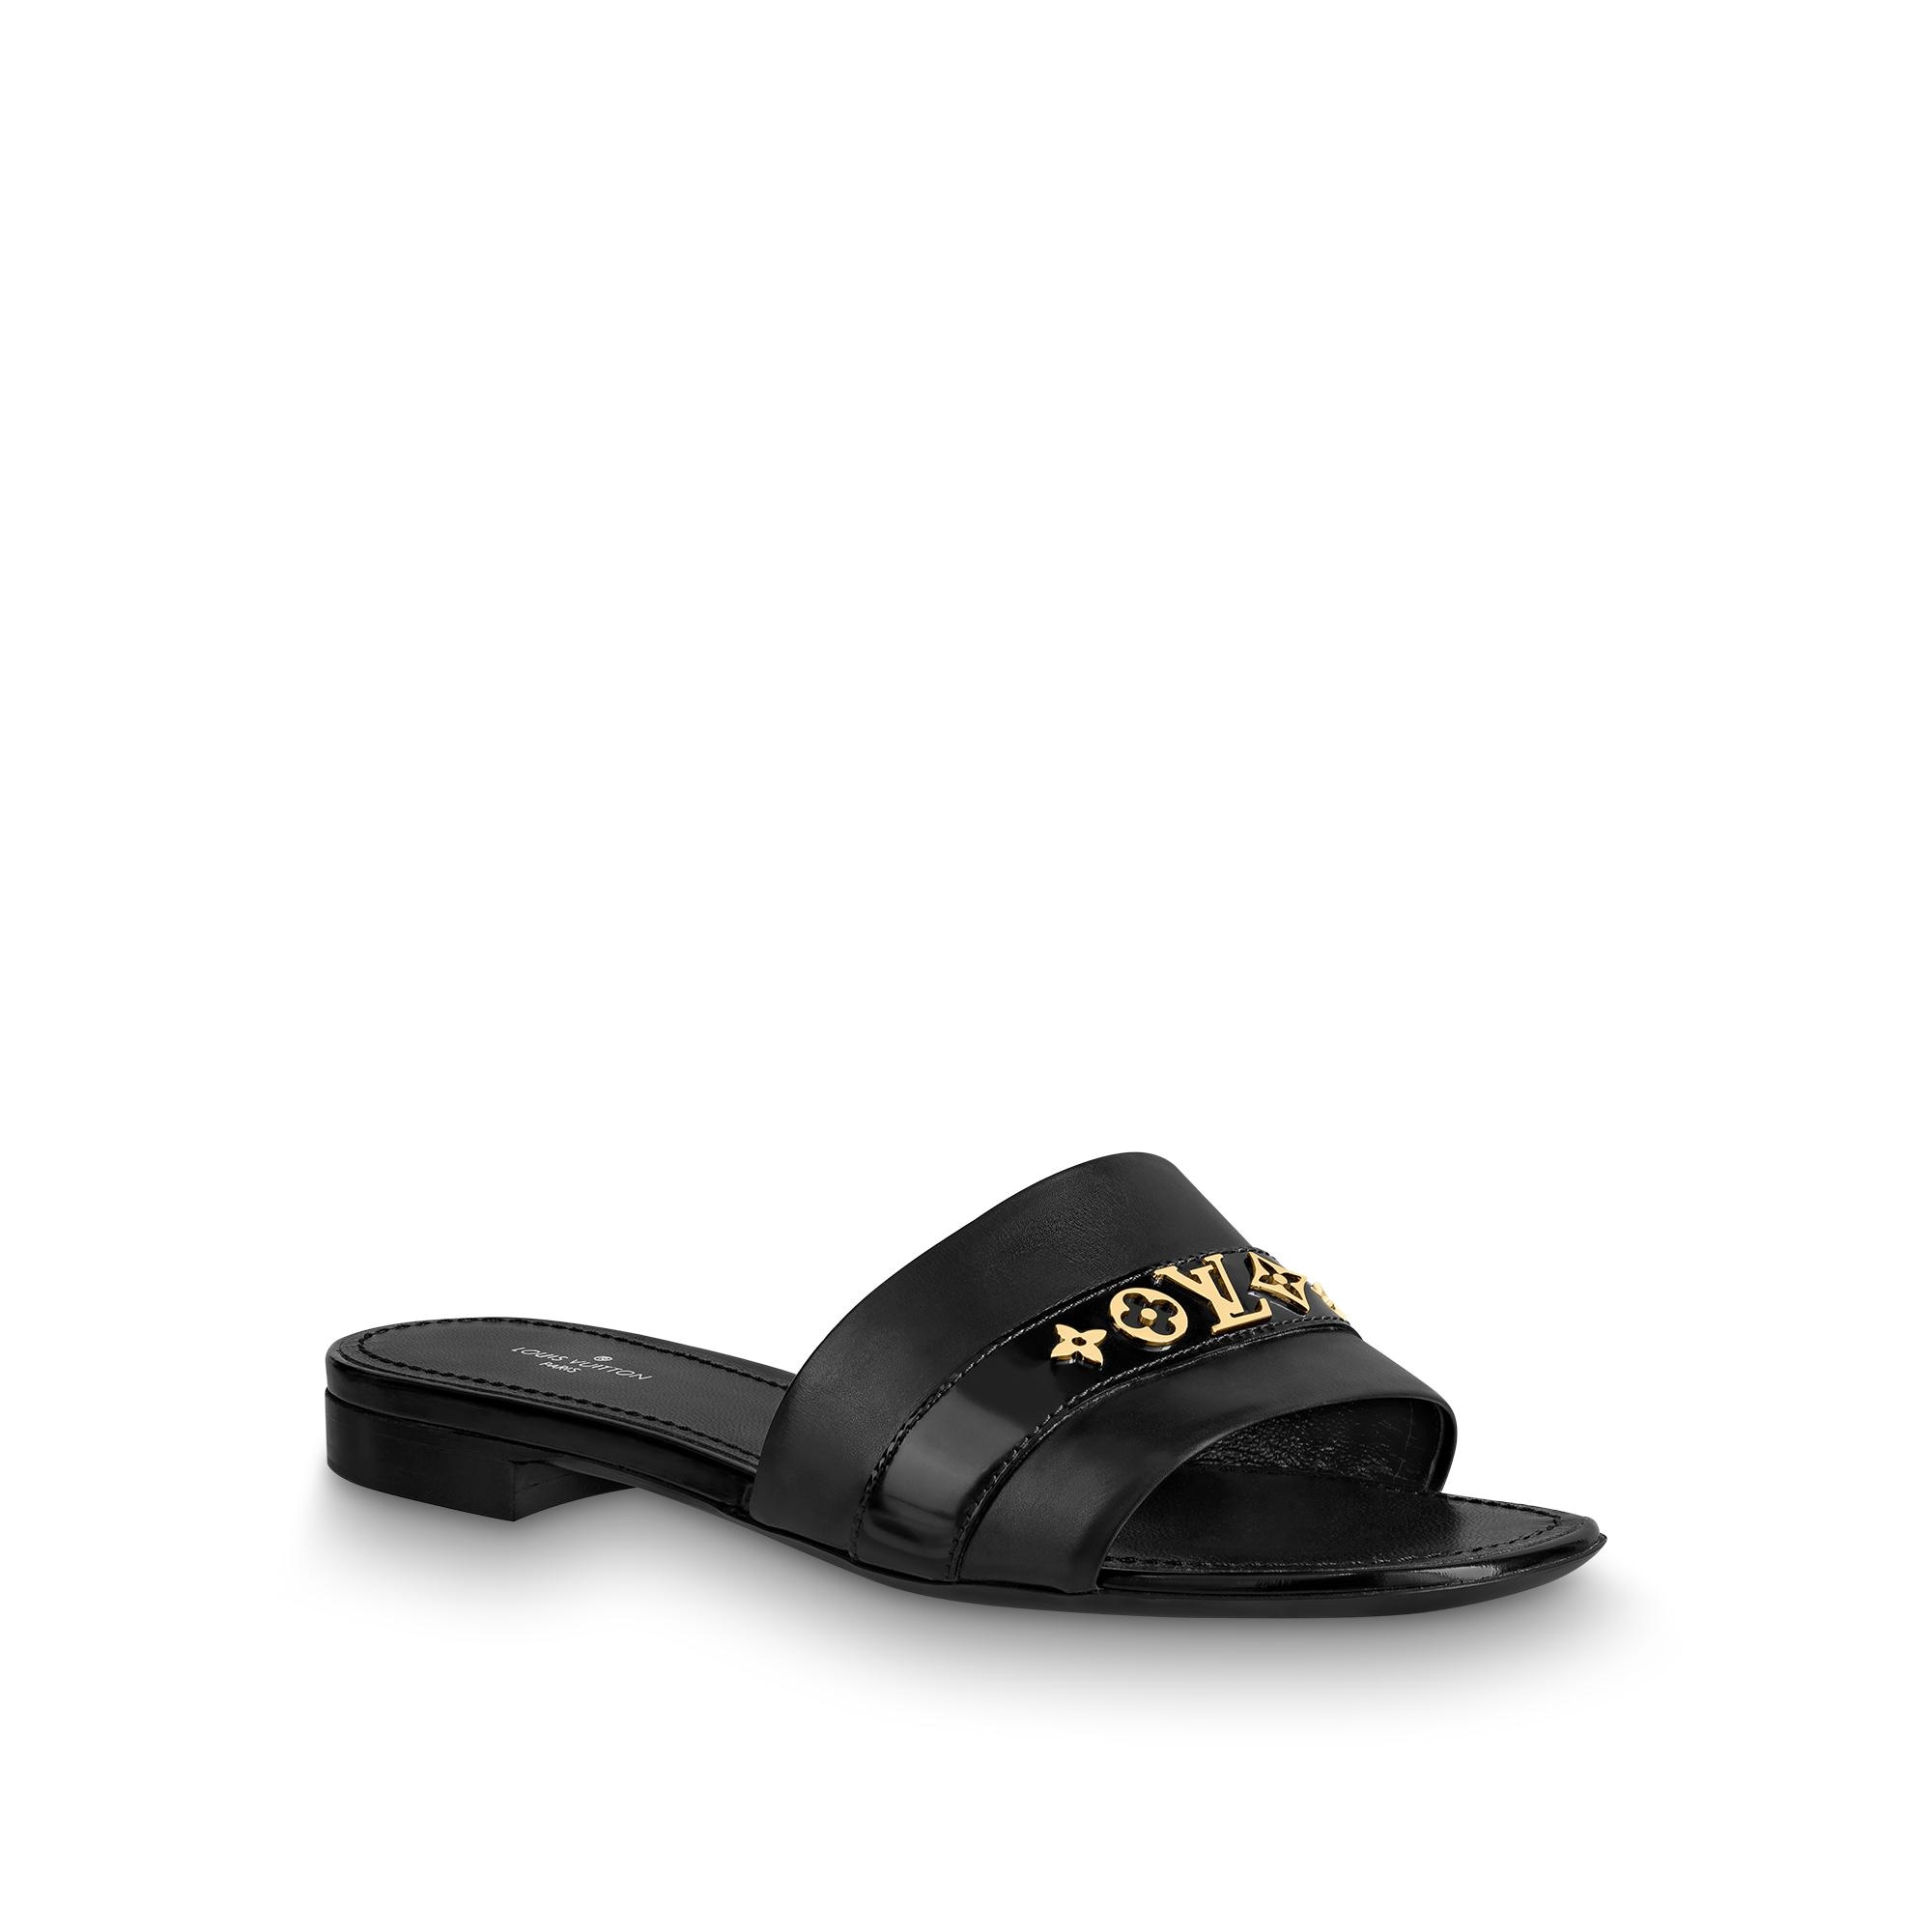 Louis Vuitton Nova Flat Sandal in Black - Shoes 1A9CZK - $122.20